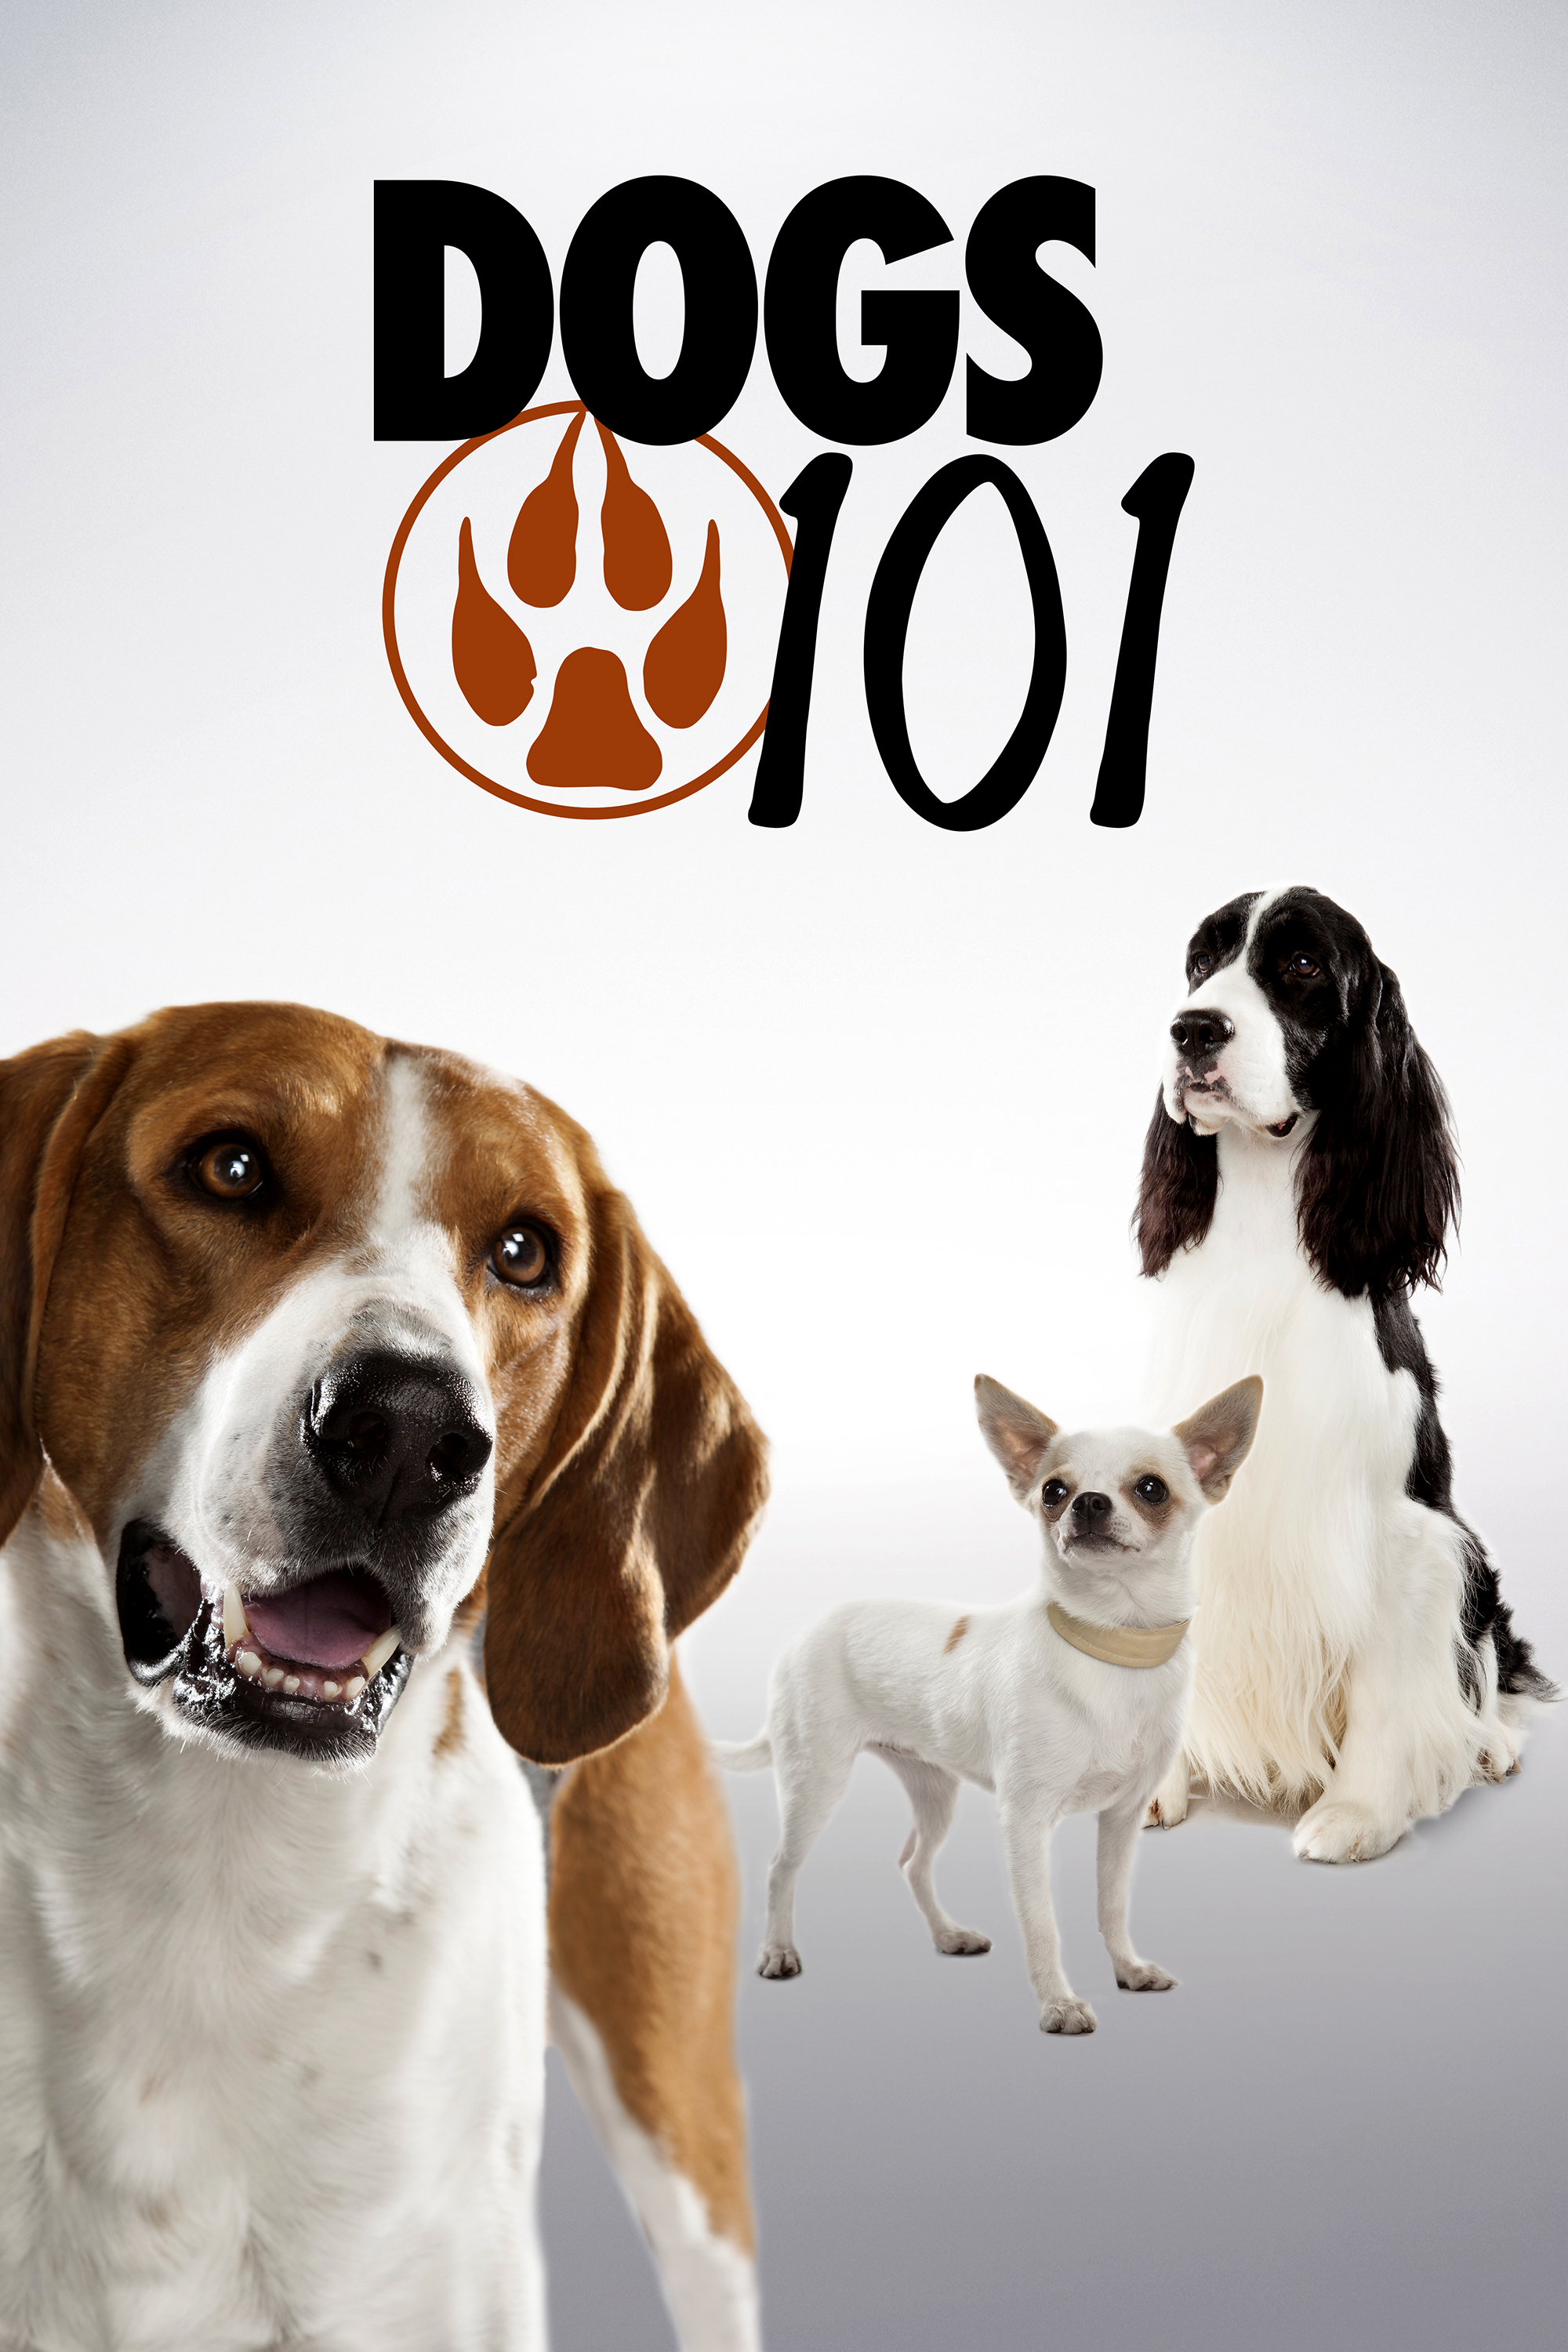 Watch Dogs 101 Online | Season 2 (2009) | TV Guide